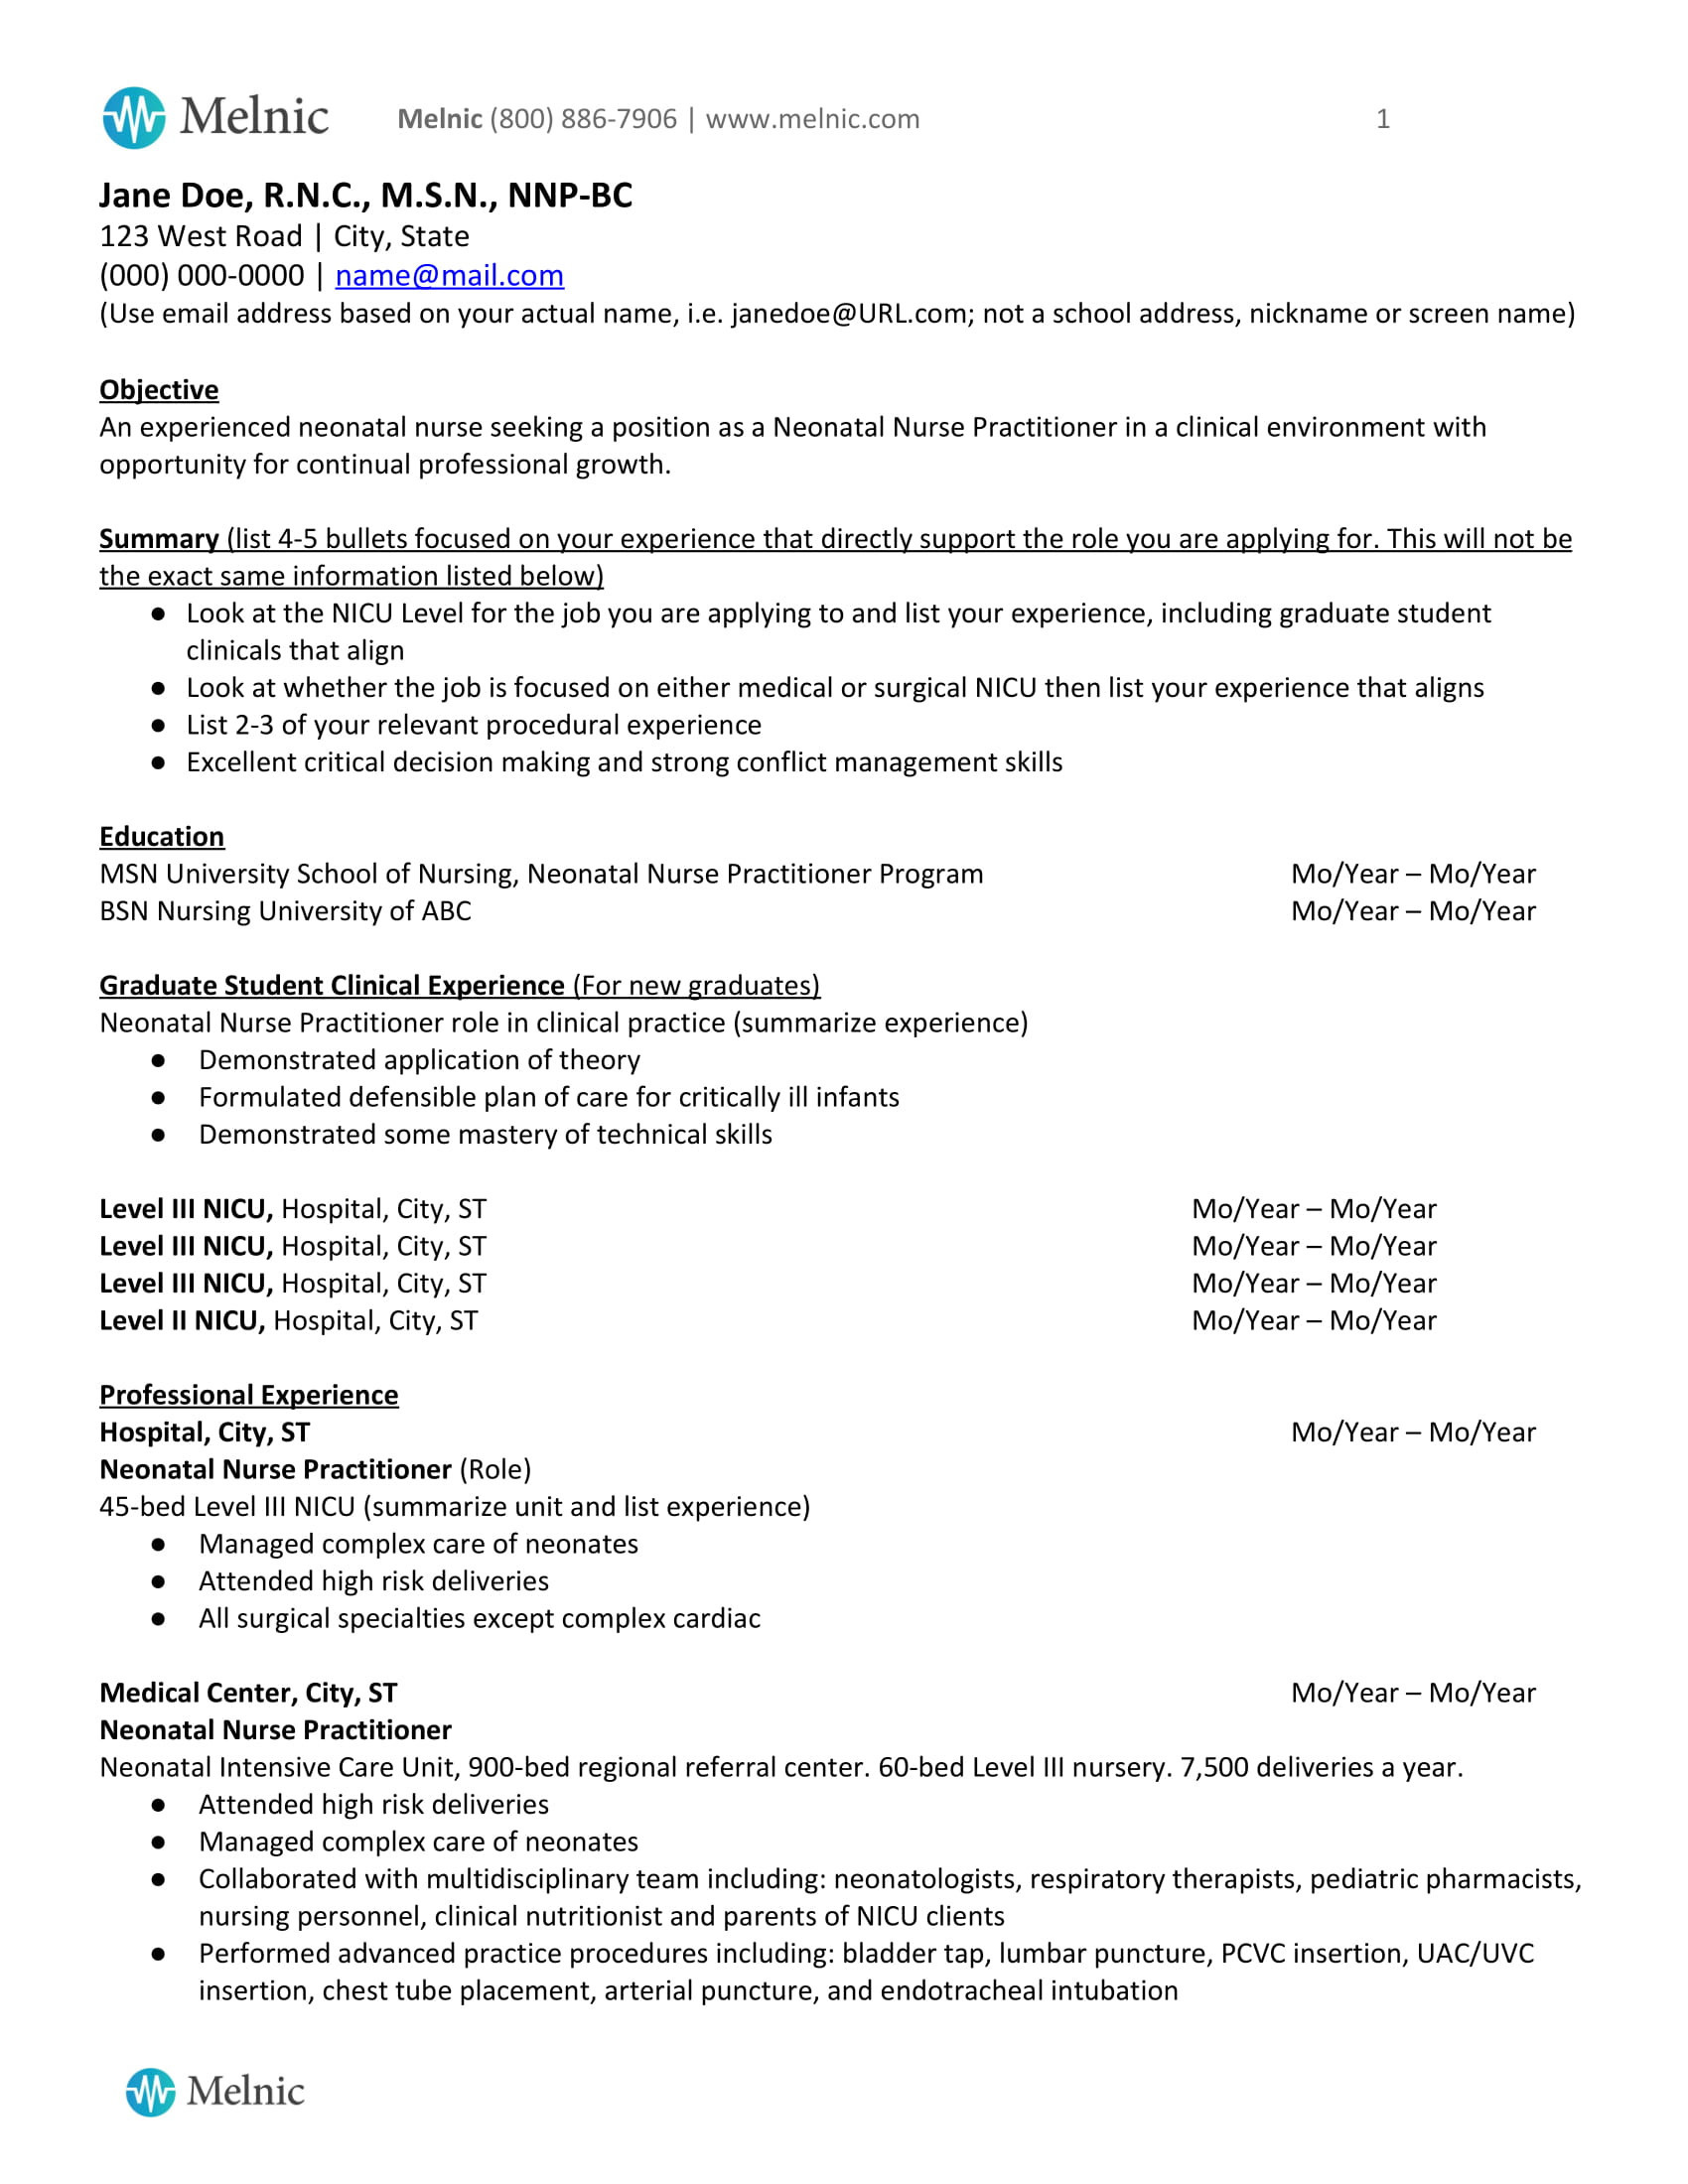 Sample Resume for New Graduate Nurse Practitioner Staf Nurse Resume format Doc